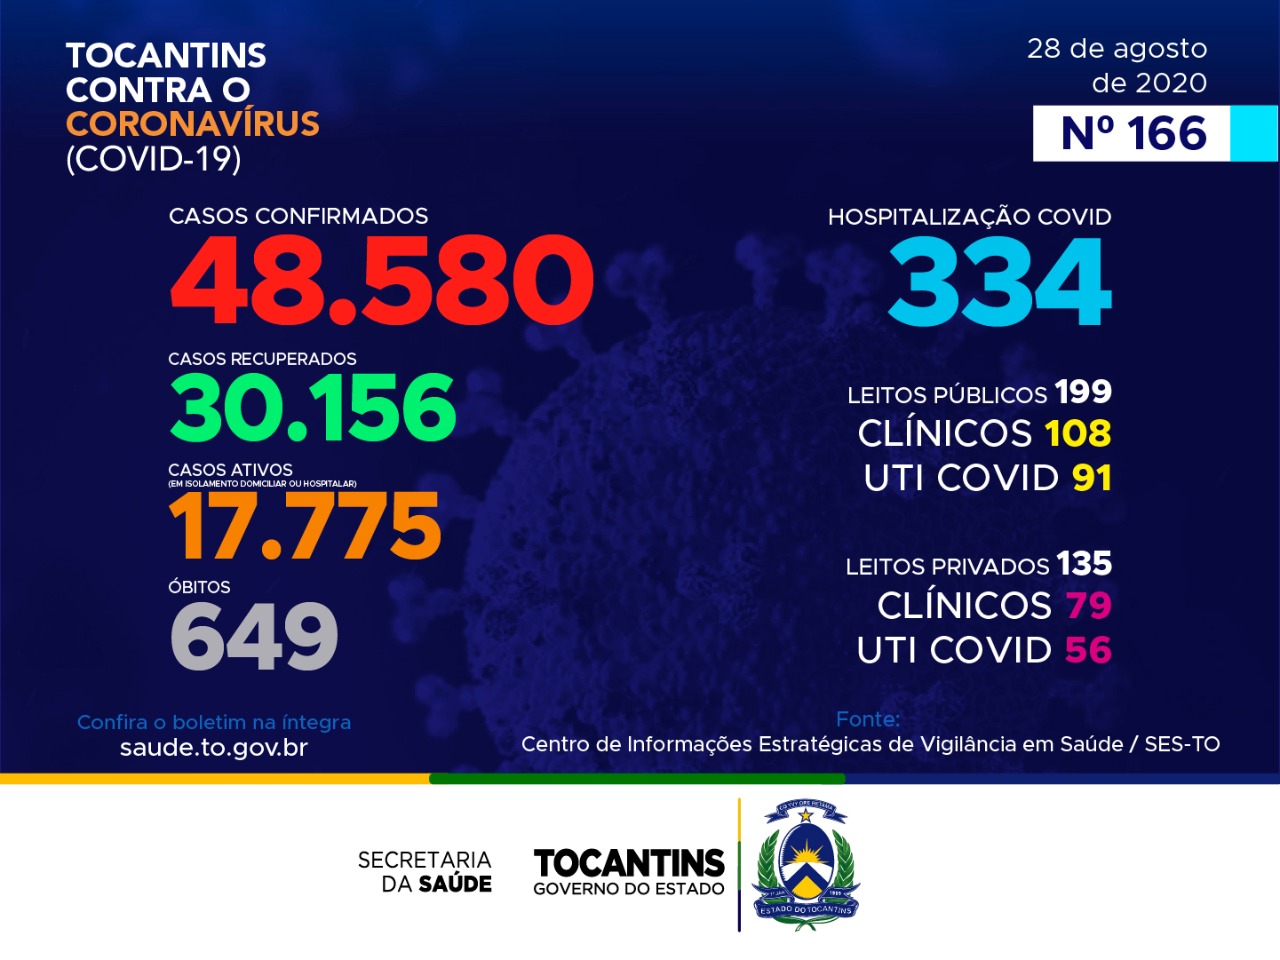 Coronavírus: Tocantins segue com mais de 48,5 mil confirmações e recuperou mais de 30 mil pacientes